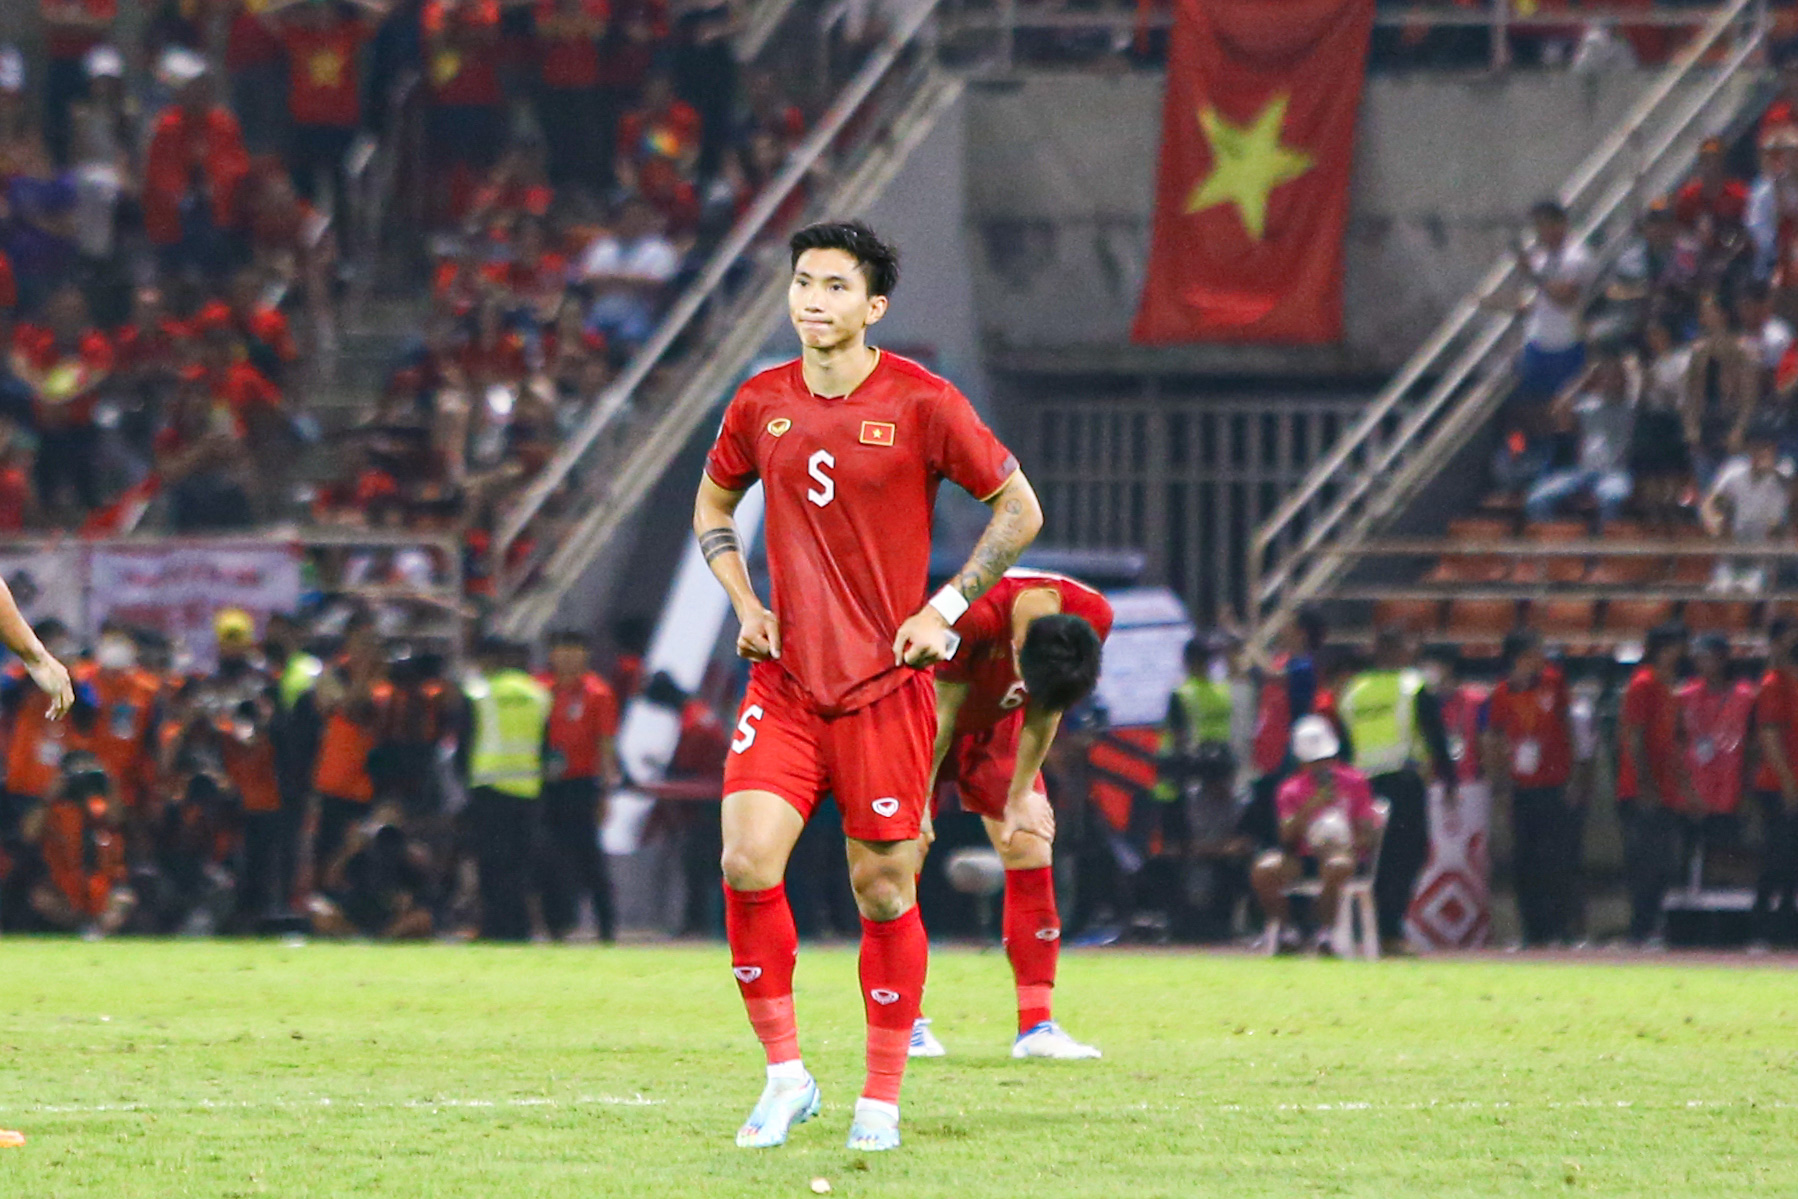 Thất bại 0-1 trước Thái Lan ở trận chung kết lượt về khiến ĐT Việt Nam không thể vô địch AFF Cup 2022 khi để thua với tổng tỷ số 2-3 sau 2 lượt trận.